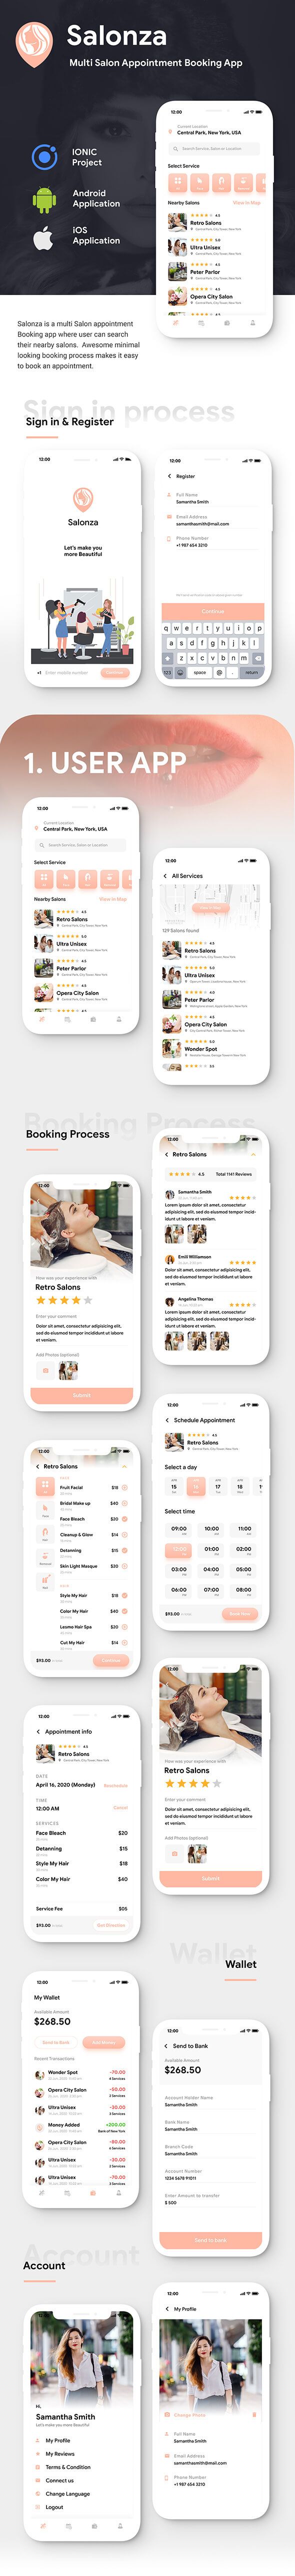 Multi Salon Android App Template+ Multi Salon iOS App Template|2 Apps User+Salon| IONIC 5| Salonza - 1